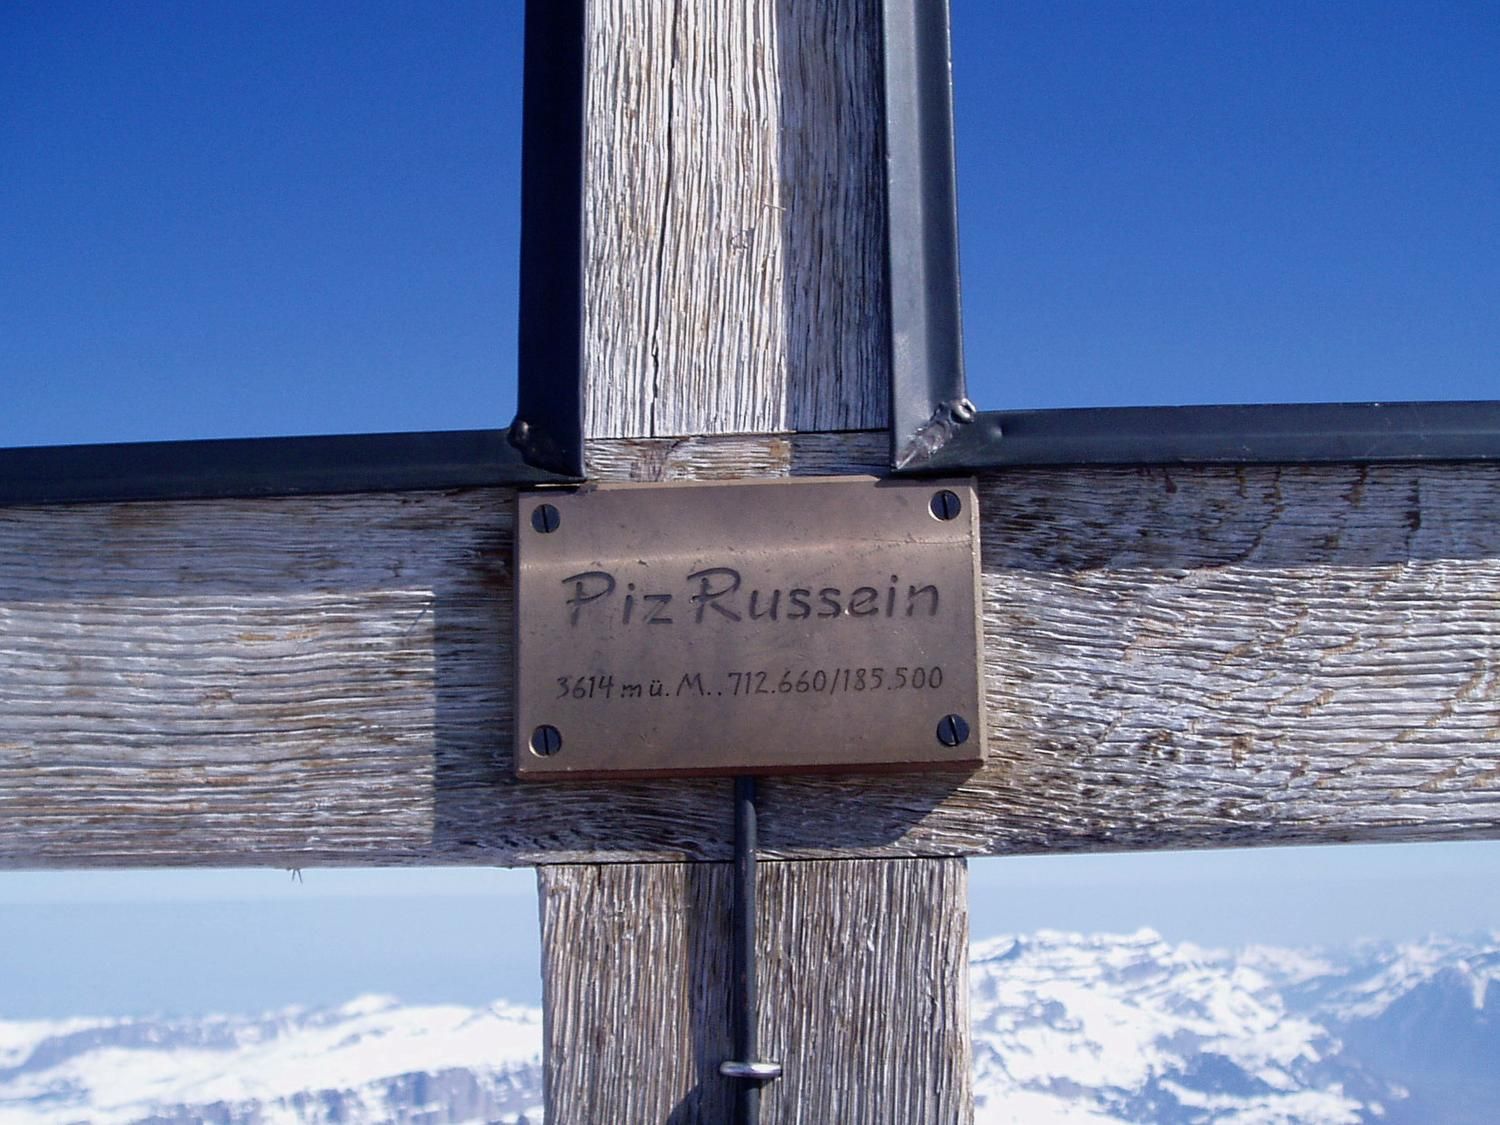 De top van de Todi, heet officieel Piz Russein; foto ijsbrand